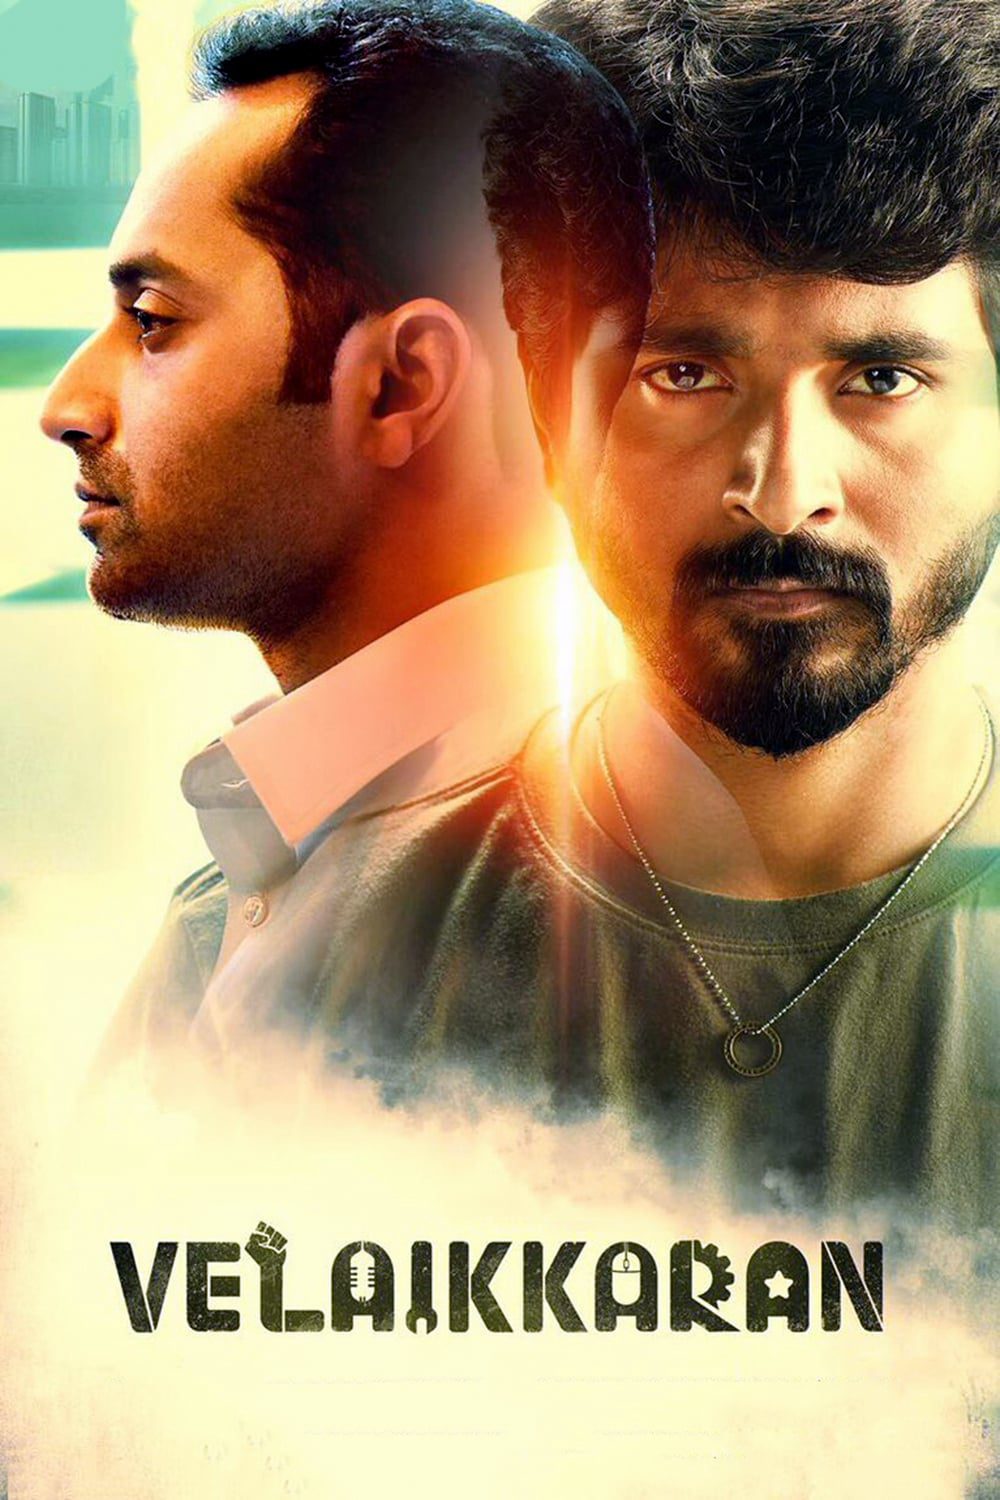 Poster for the movie "Velaikkaran"